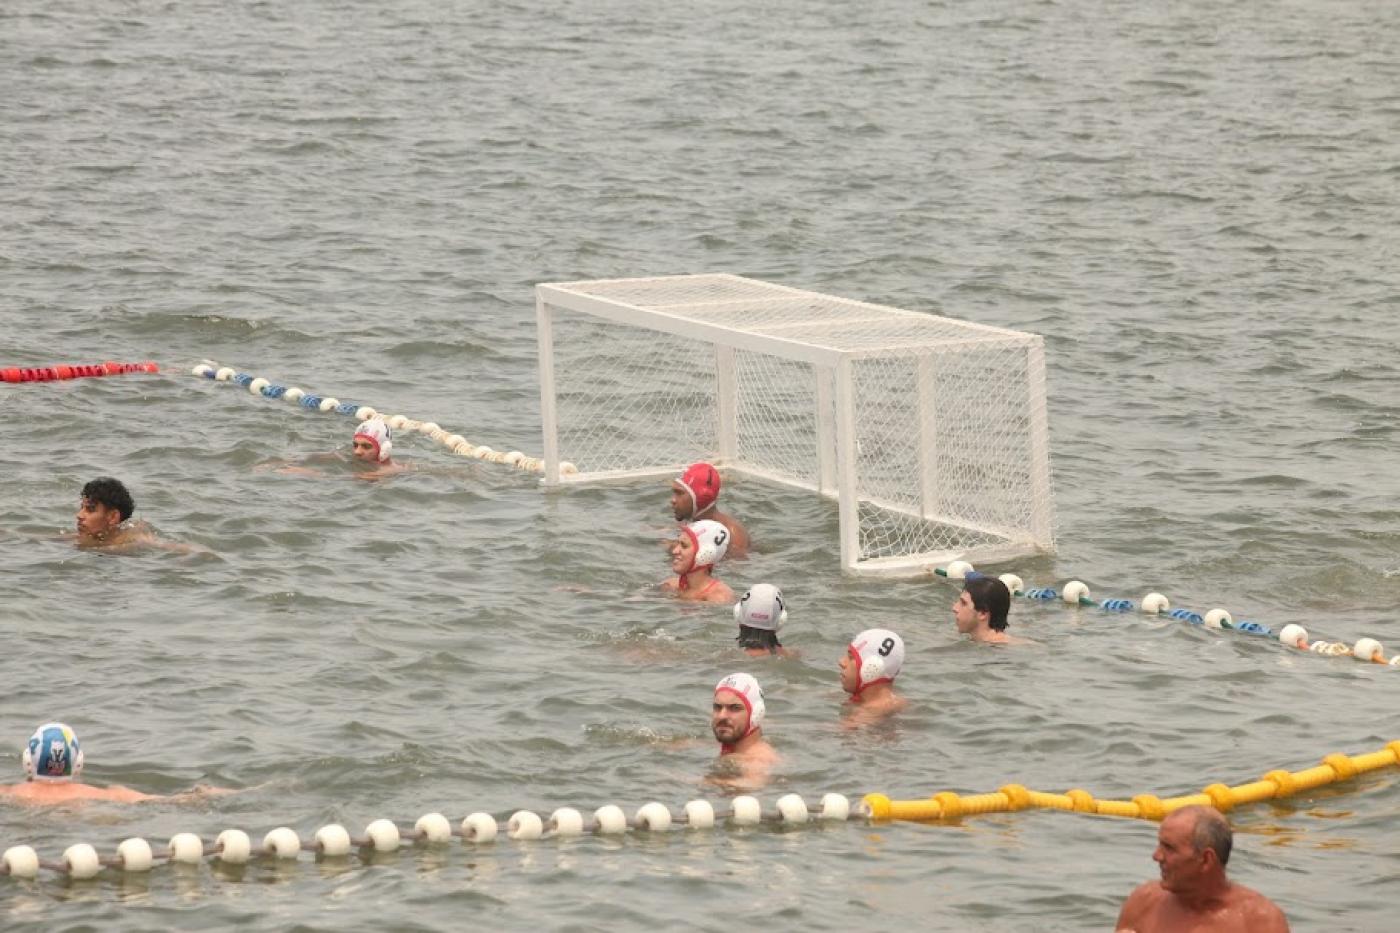 quadra de polo aquático no mar, com atletas na água e a trave no fundo. #paratodosverem 